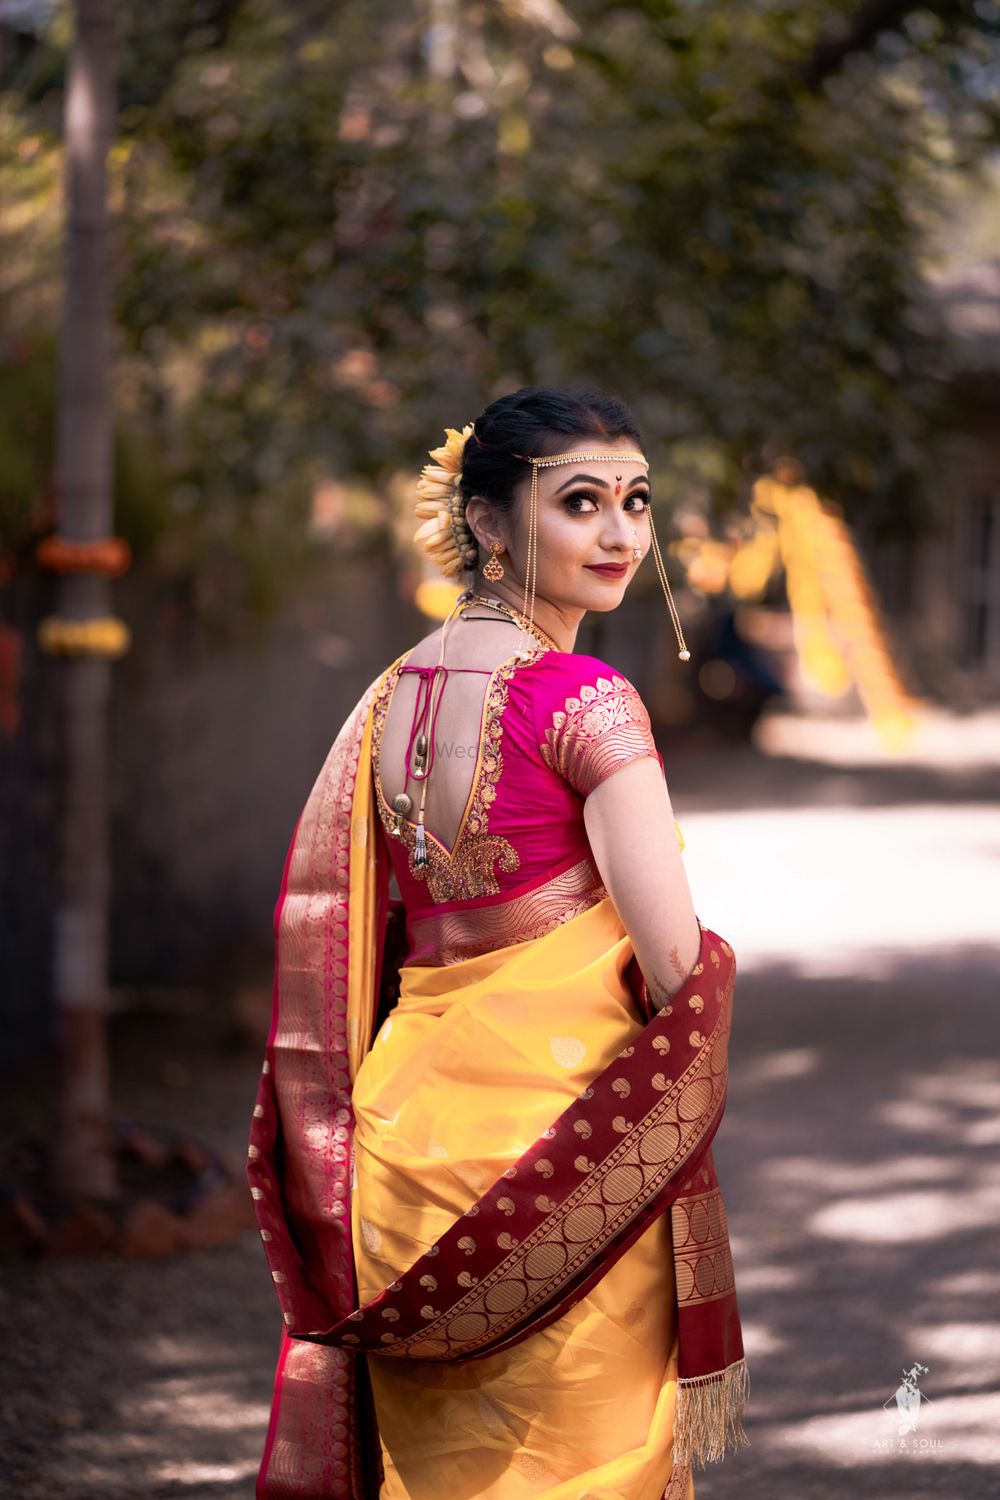 Photo of Maharashtrian bride in vivid hues